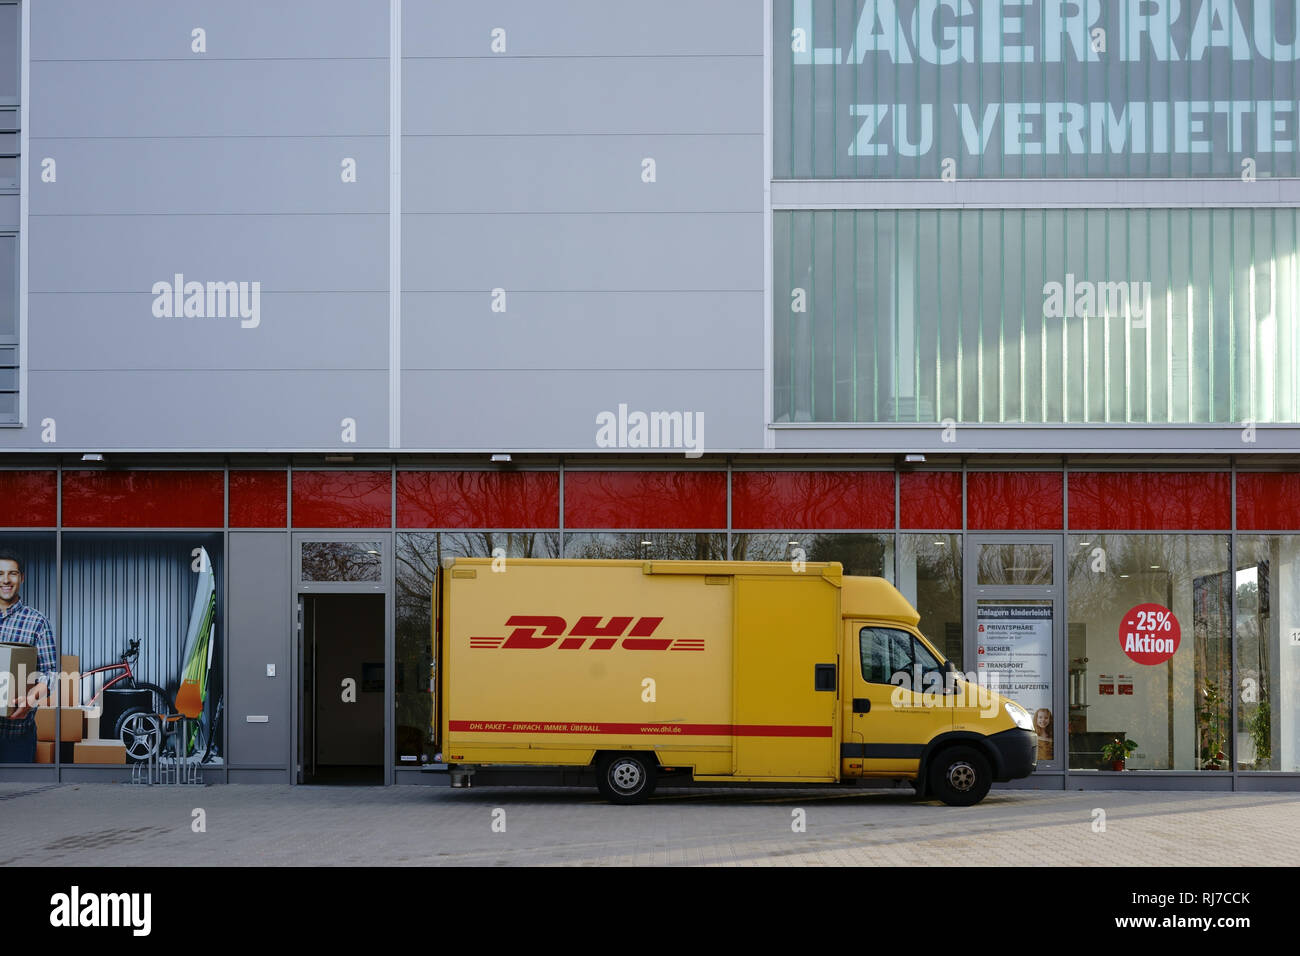 Ein Paketzusteller und Lieferfahrzeug von der DHL liefert Pakete aus. Foto Stock